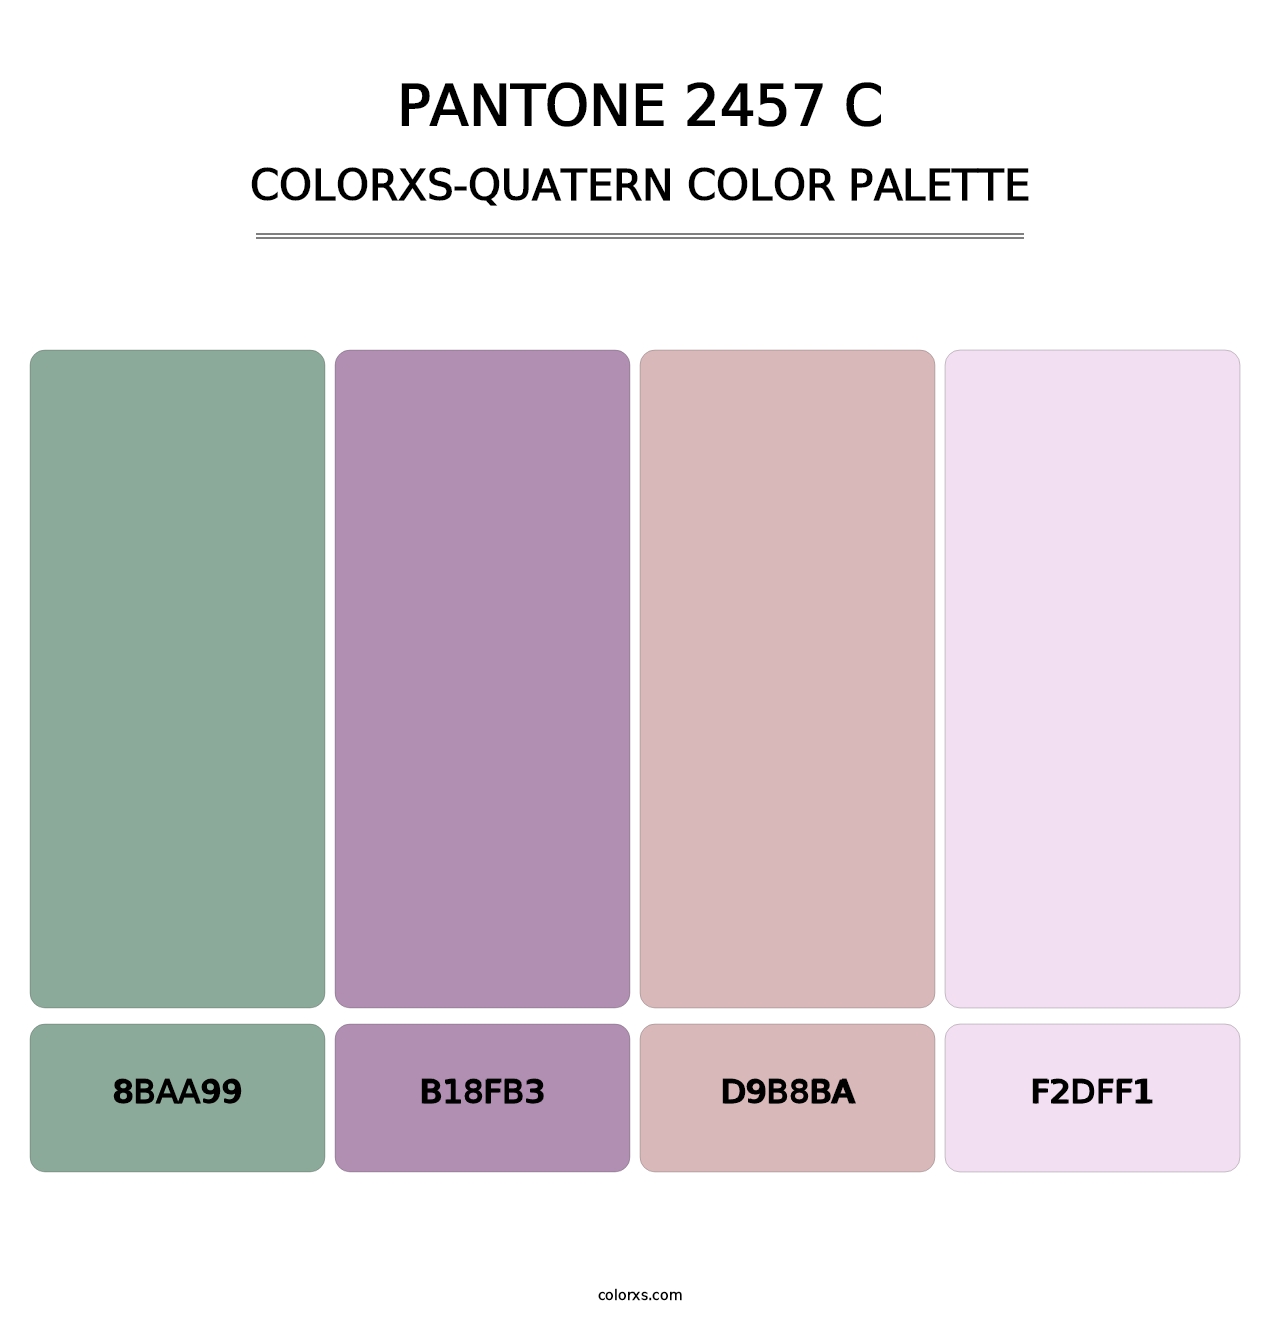 PANTONE 2457 C - Colorxs Quatern Palette